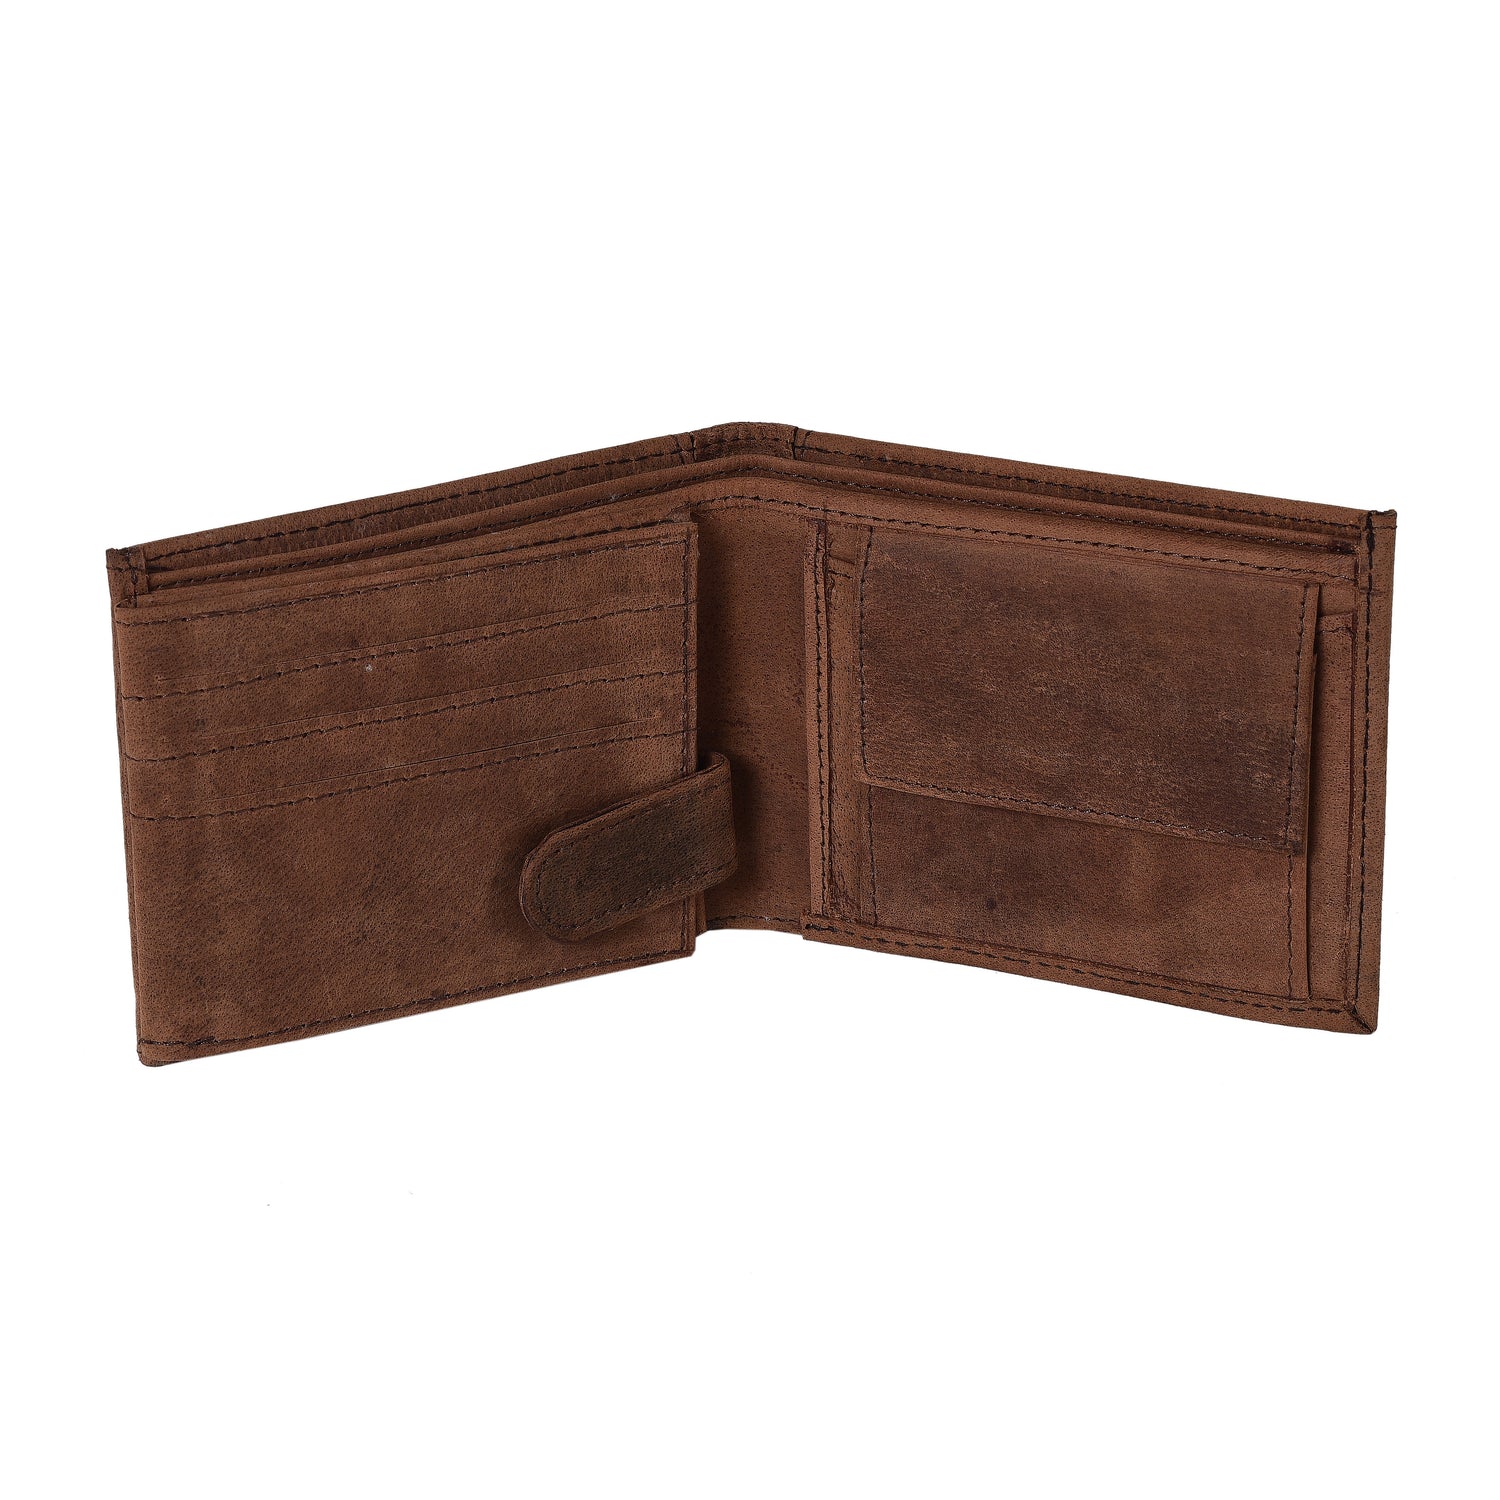 Vintage Genuine Leather Wallet Men Purse Leather Men Wallet Vertical Short  Money Bag Male Wallet Credit Card Holder - Wallets - AliExpress